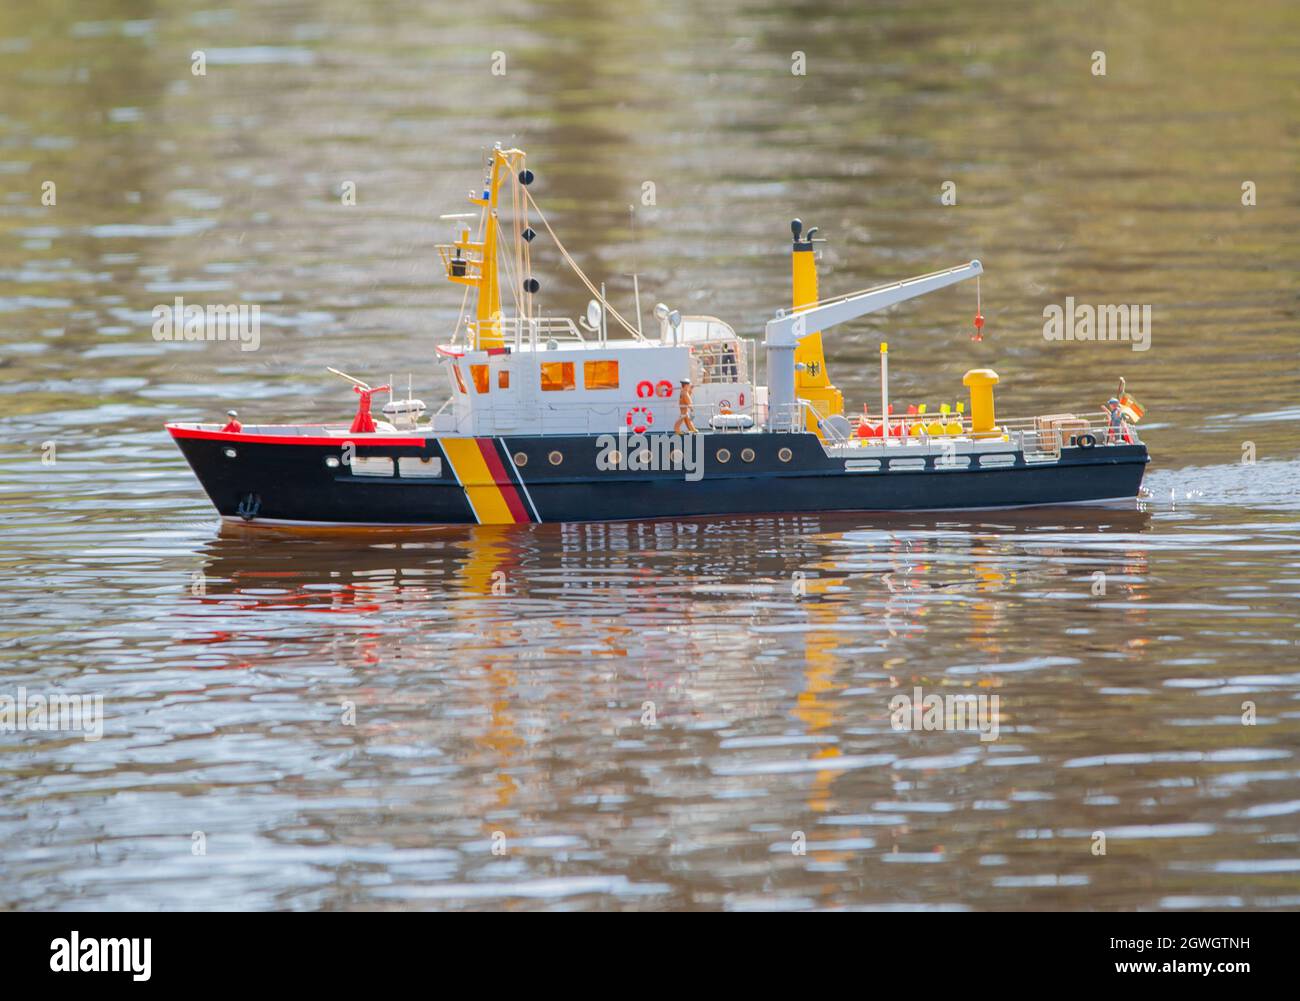 Ferngesteuertes Schiffsmodell ist ferngesteuert auf EINEM See  Stockfotografie - Alamy